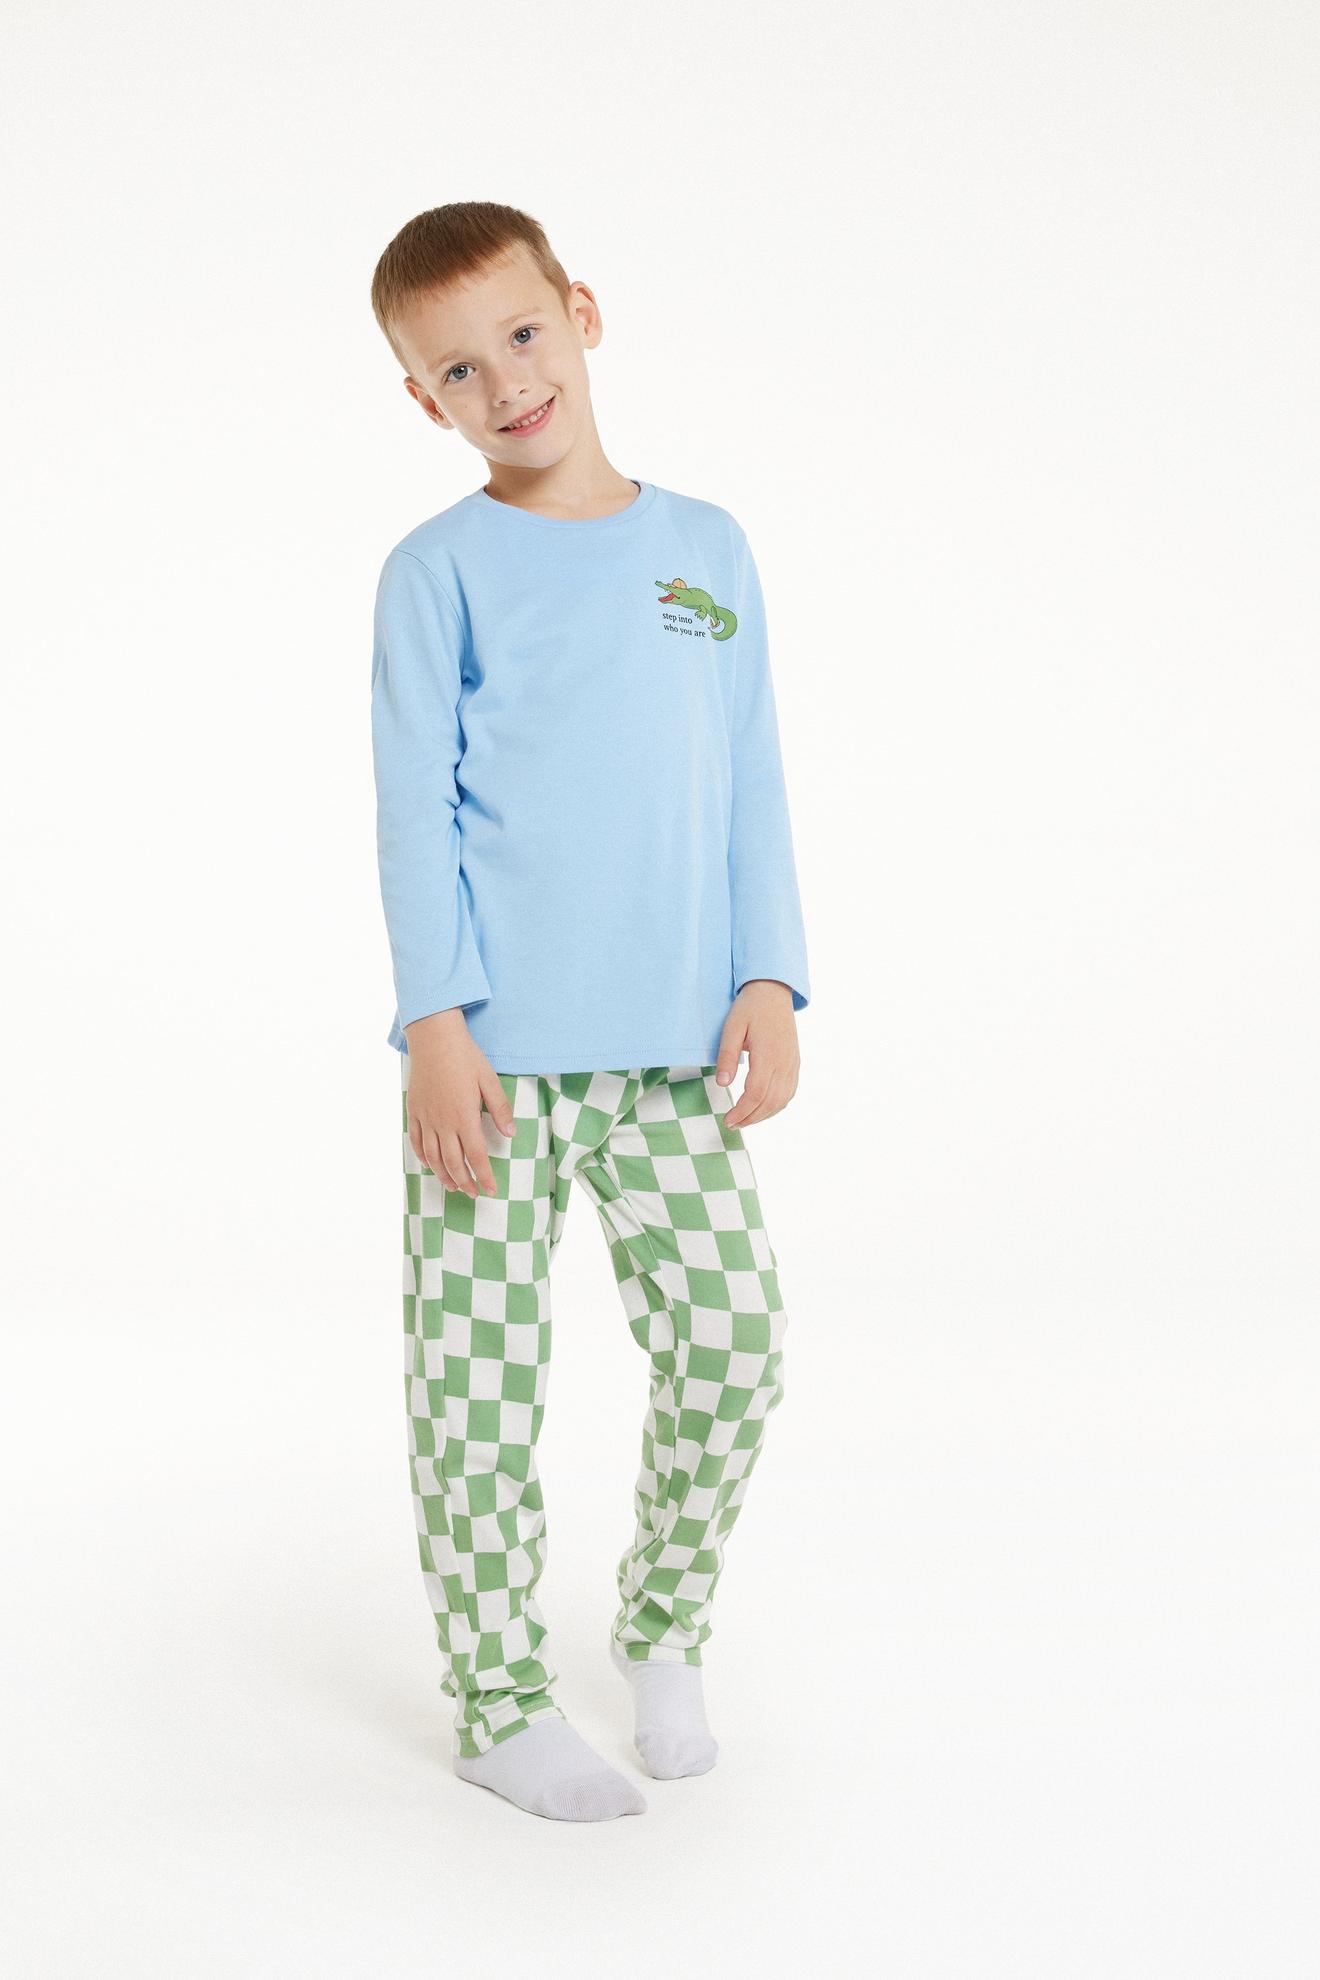 Dlhé Bavlnené Chlapčenské Pyžamo s Potlačou Krokodíla v akcii za 16,99€ v Tezenis